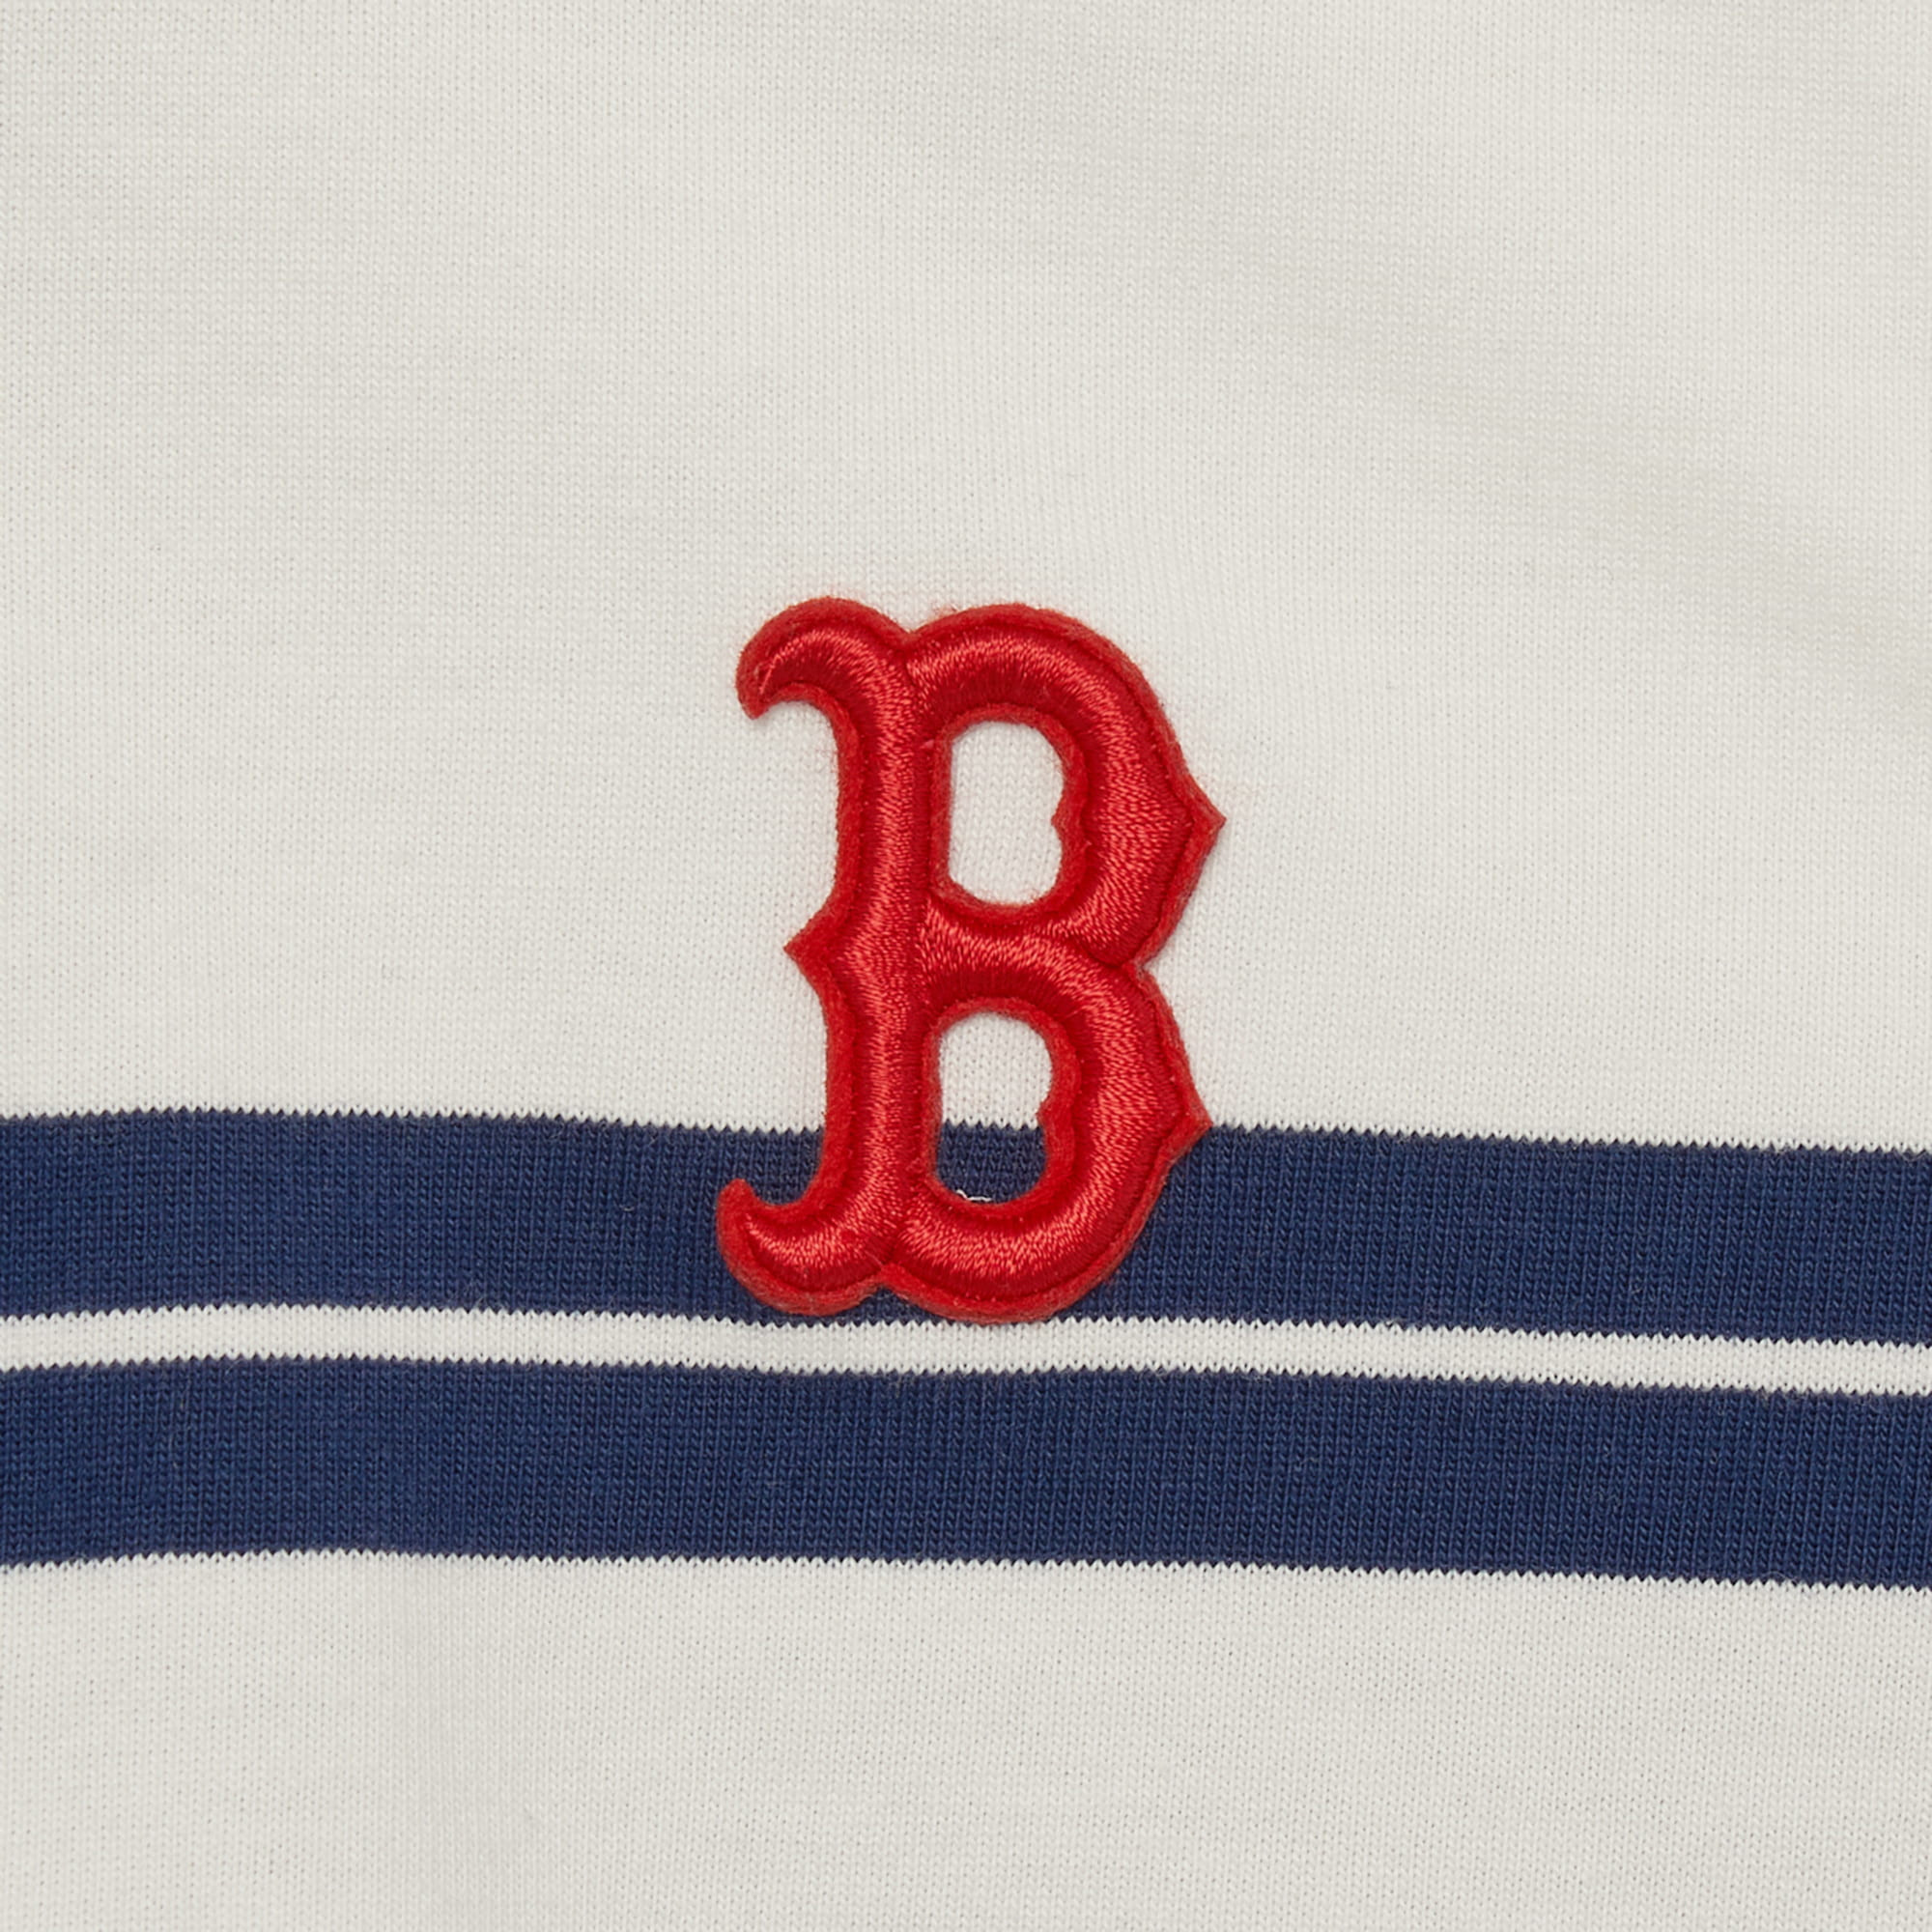 ÁO THUN POLO NỮ MLB B VARSITY STRIPED CROP COLLAR T-SHIRT BOSTON RED SOX 3FPQV0133-43IVS MÀU TRẮNG SỌC XANH NAVY 18